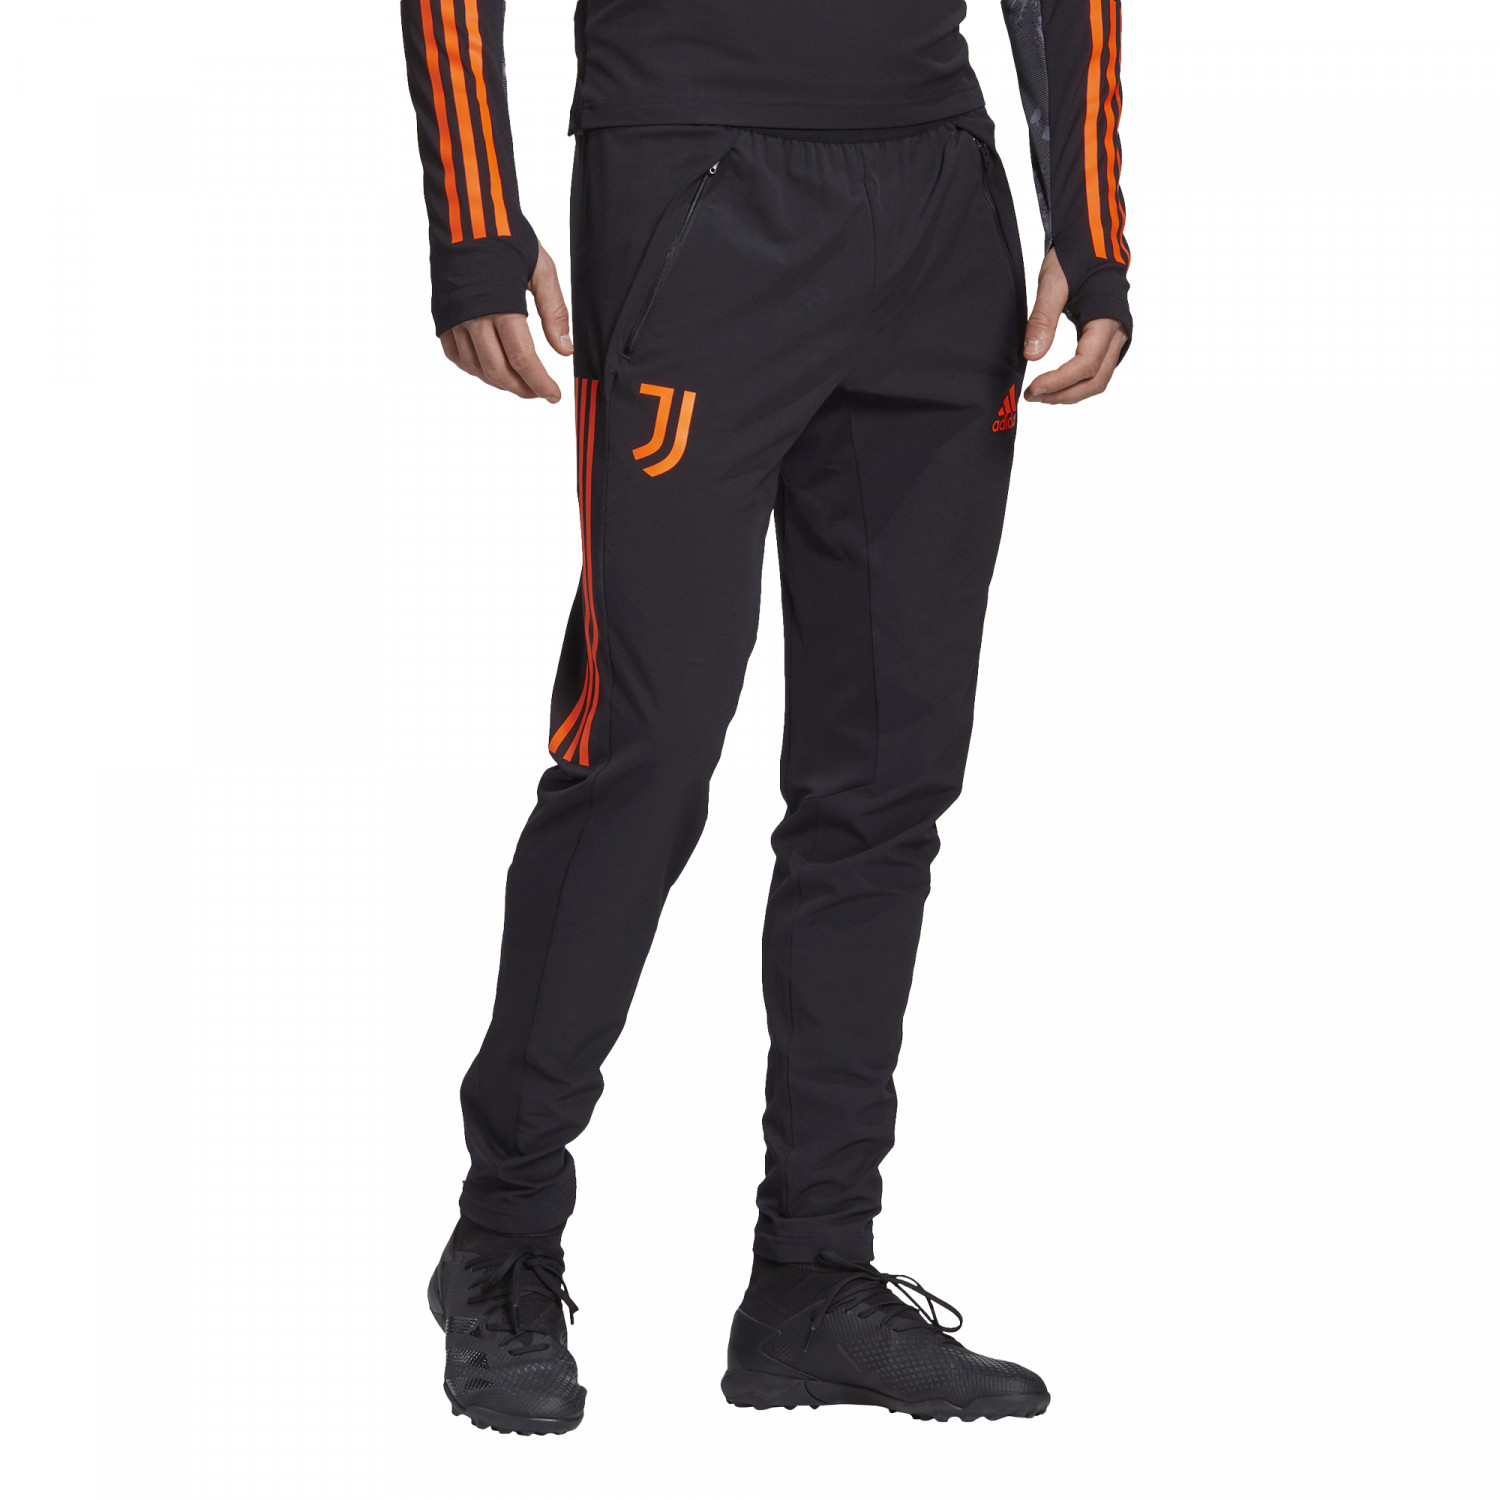 Pantalon survêtement Juventus noir orange 2020/21 sur Foot.fr